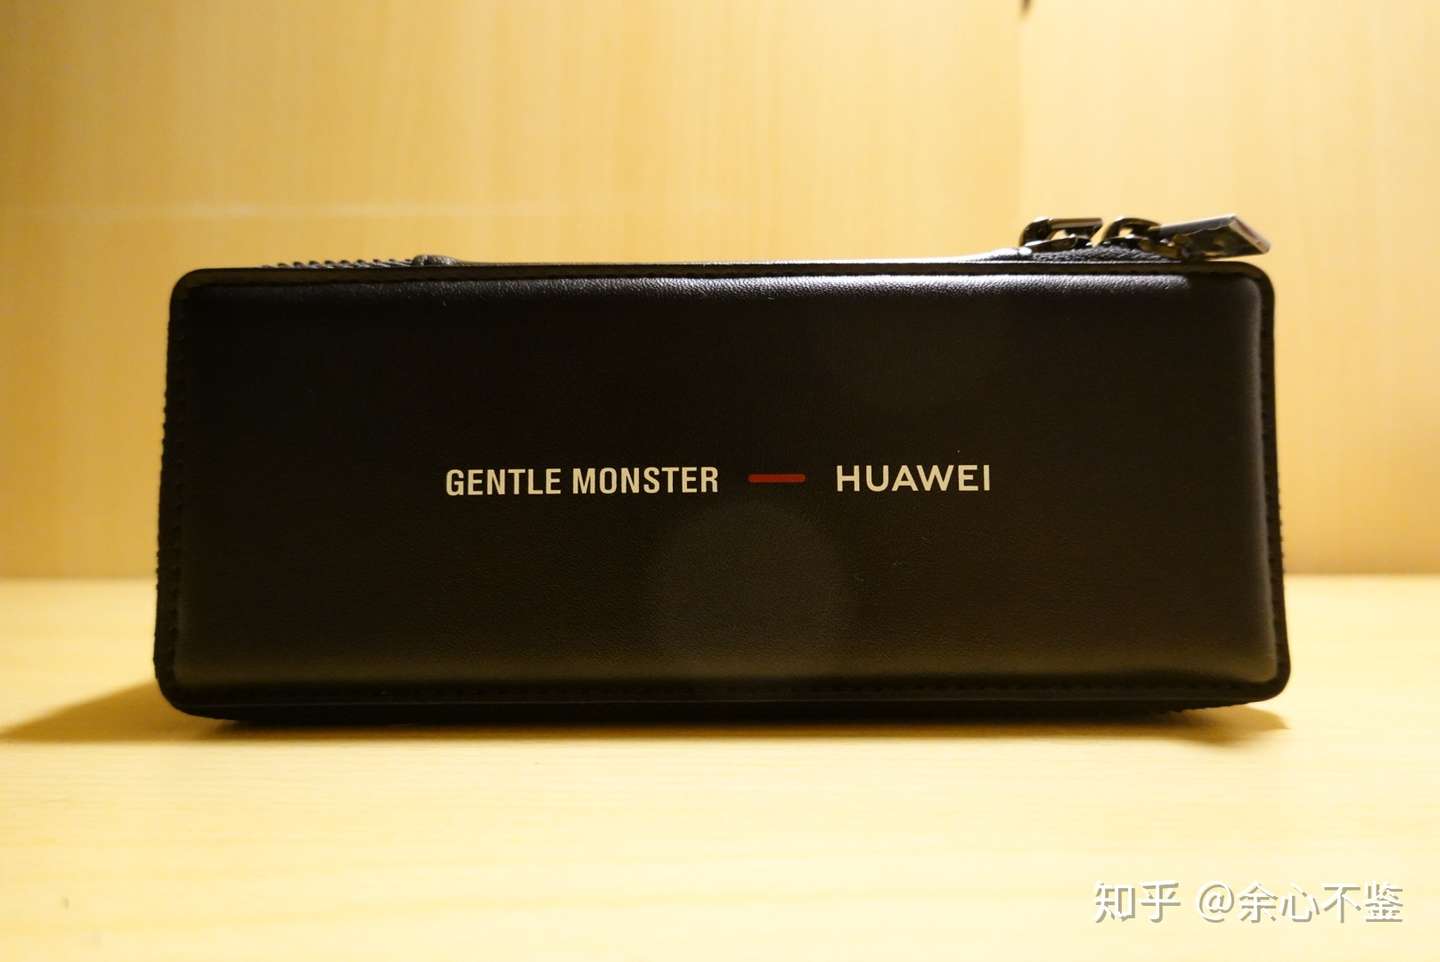 既能装杯又能听歌的智能眼镜 Huawei X Gentle Monster Eyewear Ii体验 知乎